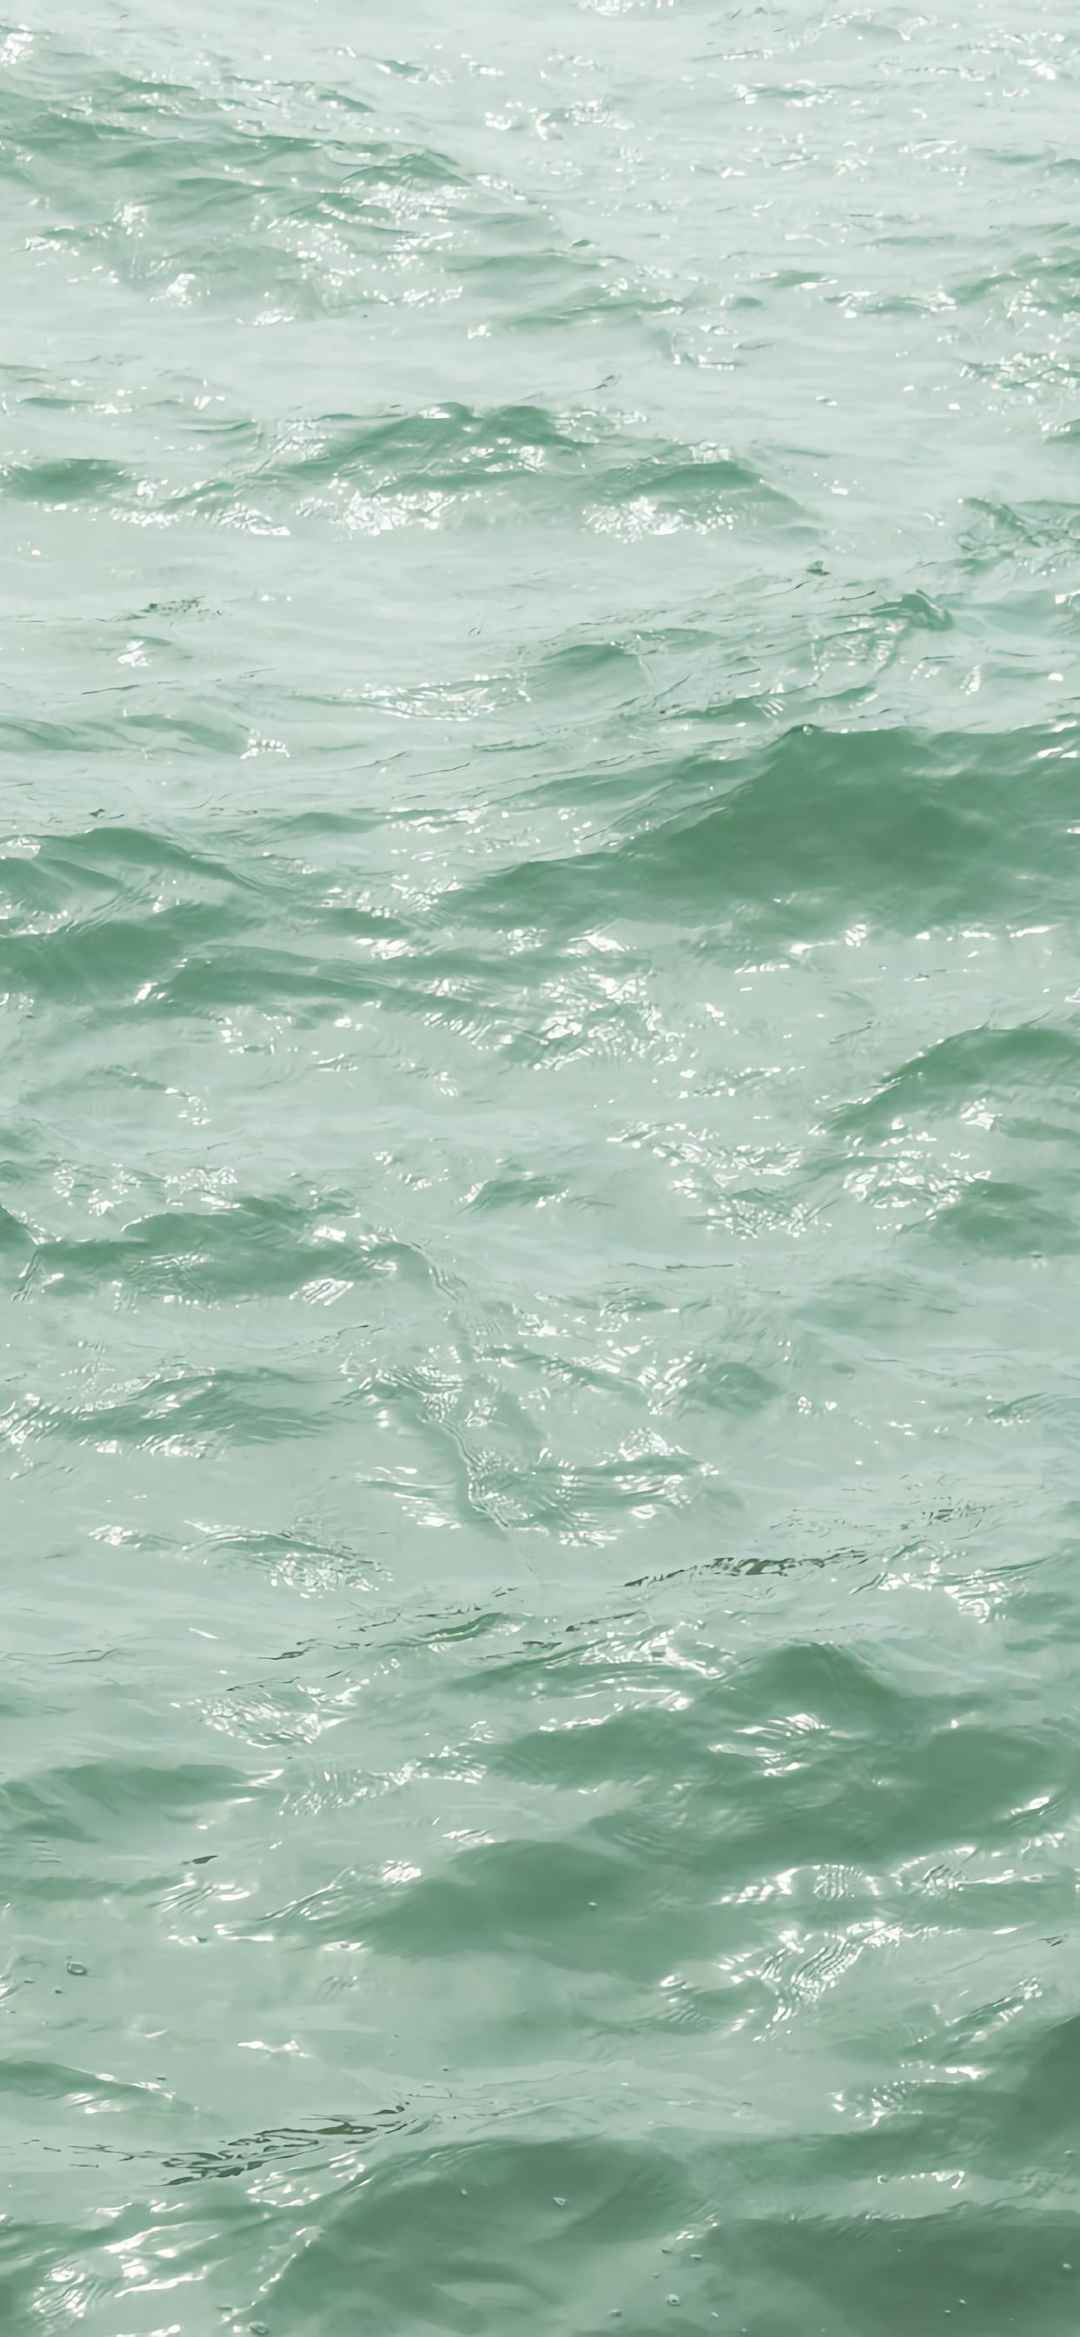 浅绿色大海风景图片手机壁纸